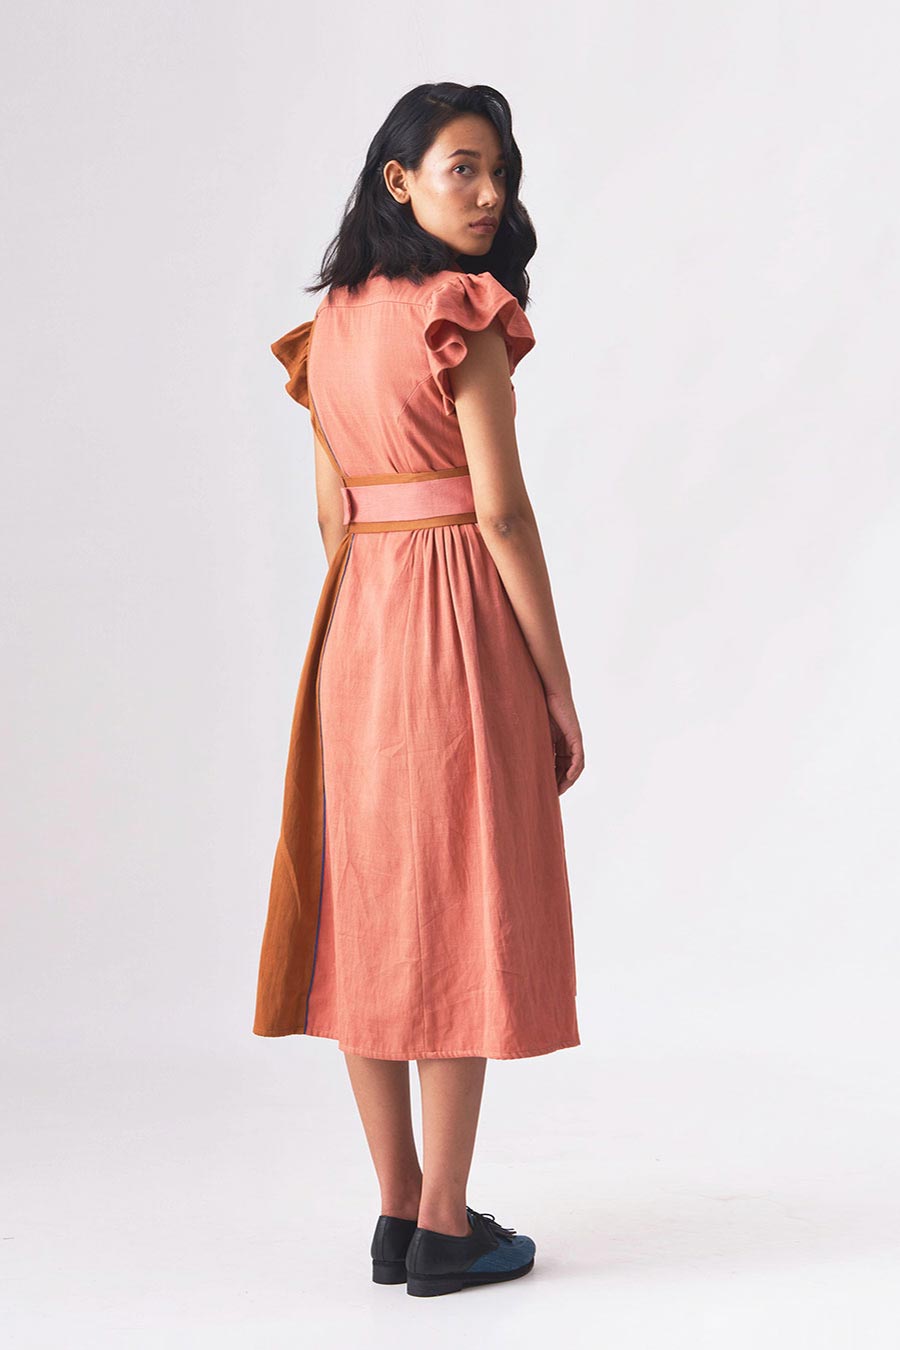 DARLENE - Handloom Denim A-Line Dress